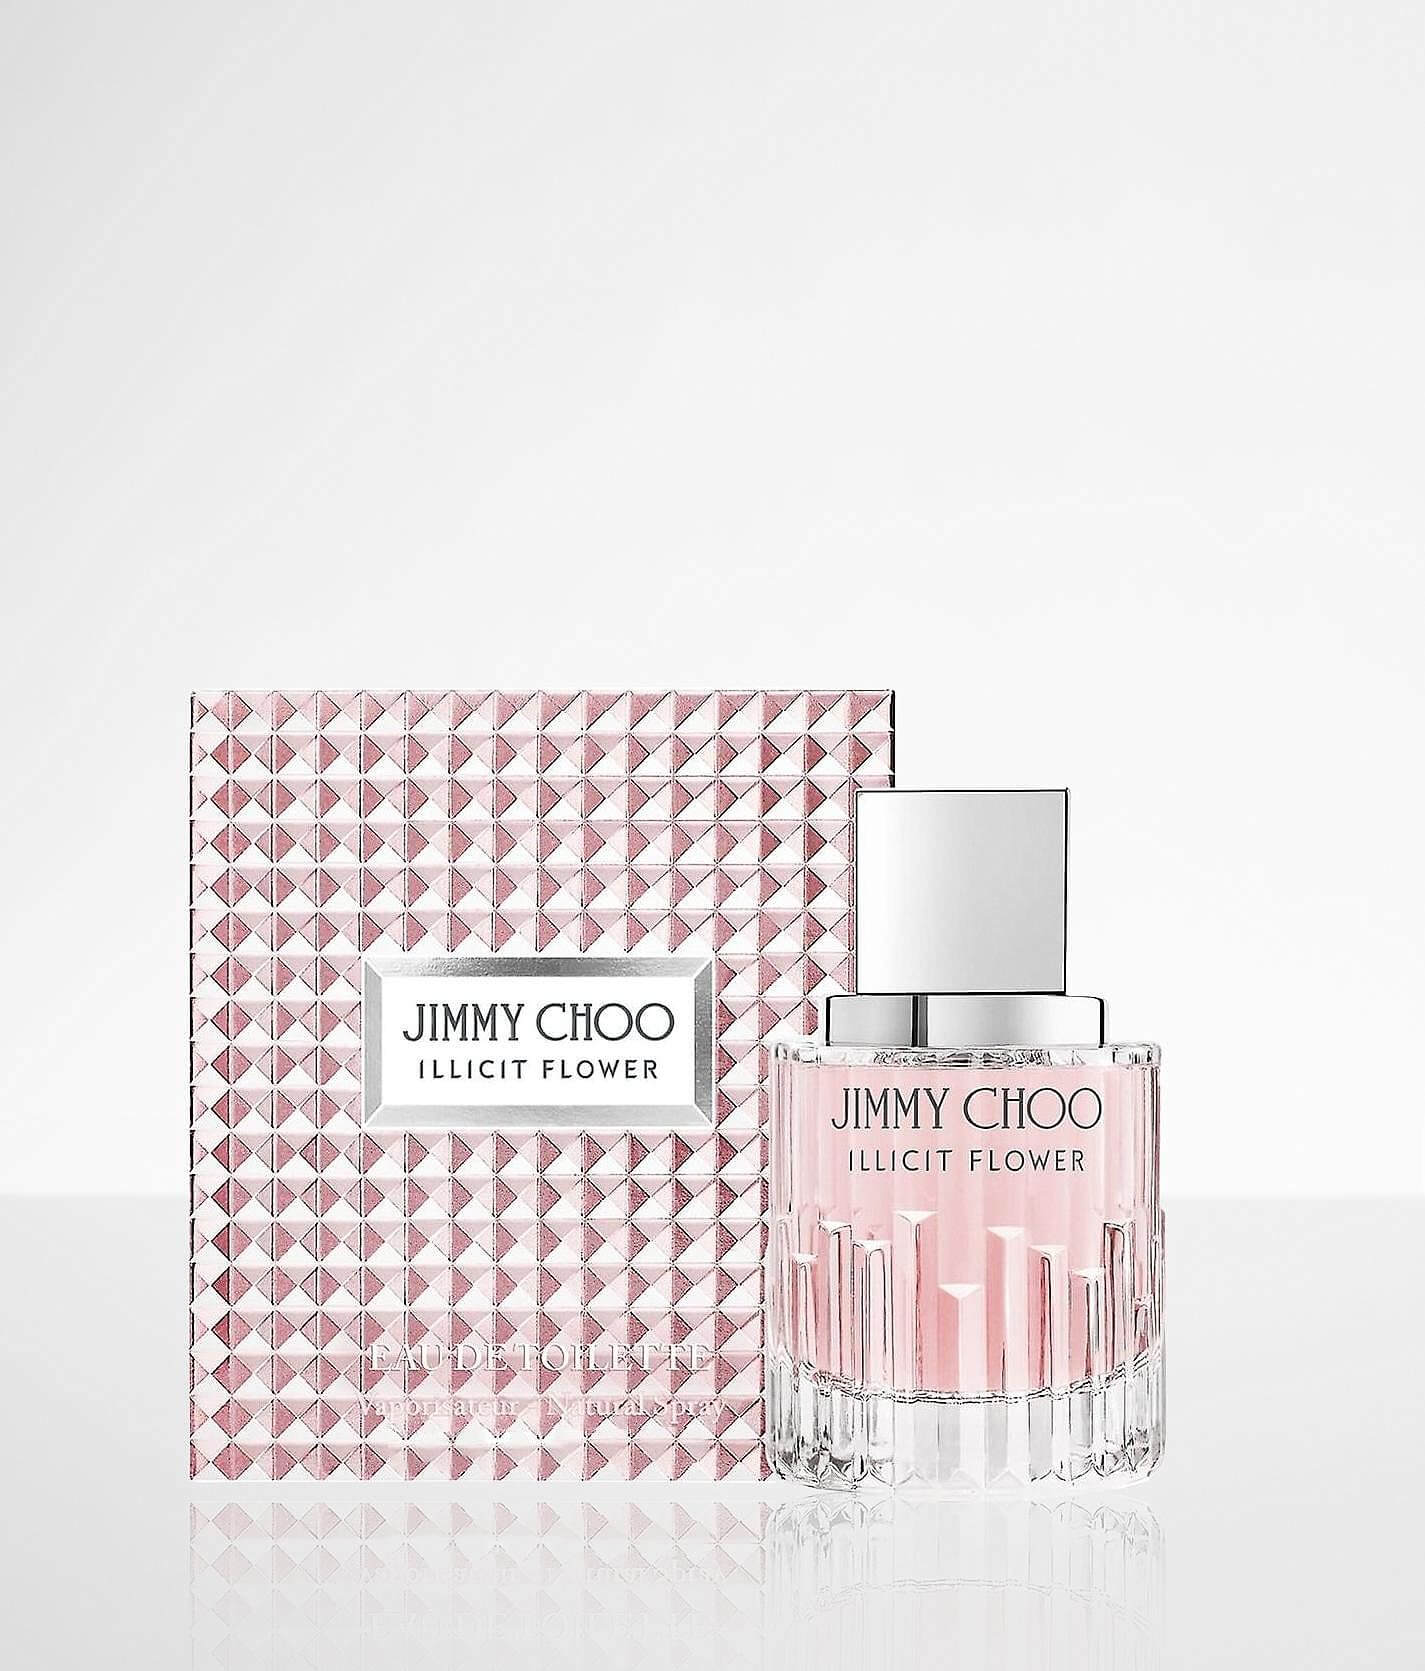 Jimmy Choo Illicit Eau de Parfum Spray 2 oz (women)